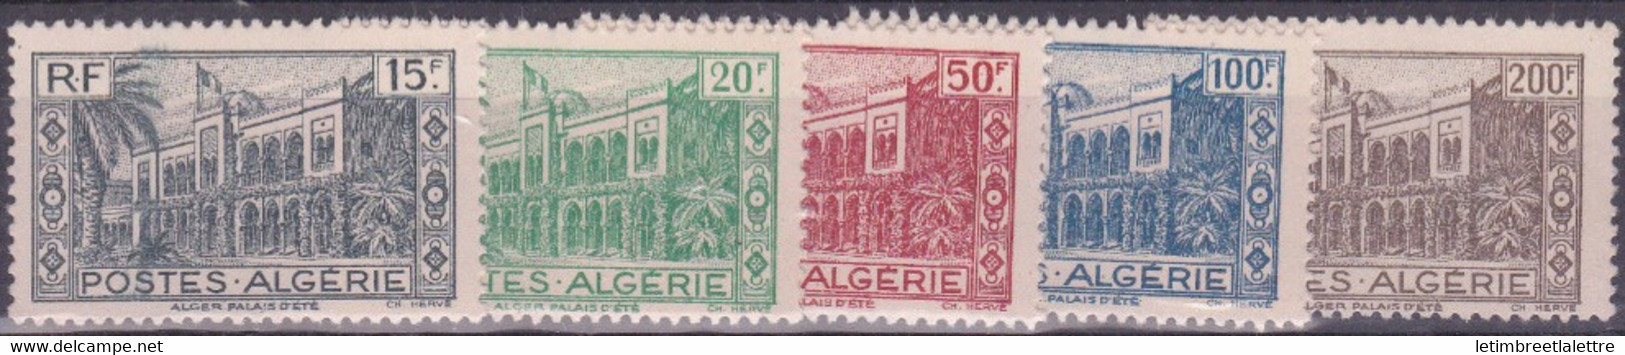 Algérie - YT N° 200 à 204 ** - Neuf Sans Charnière - 1944 - Neufs